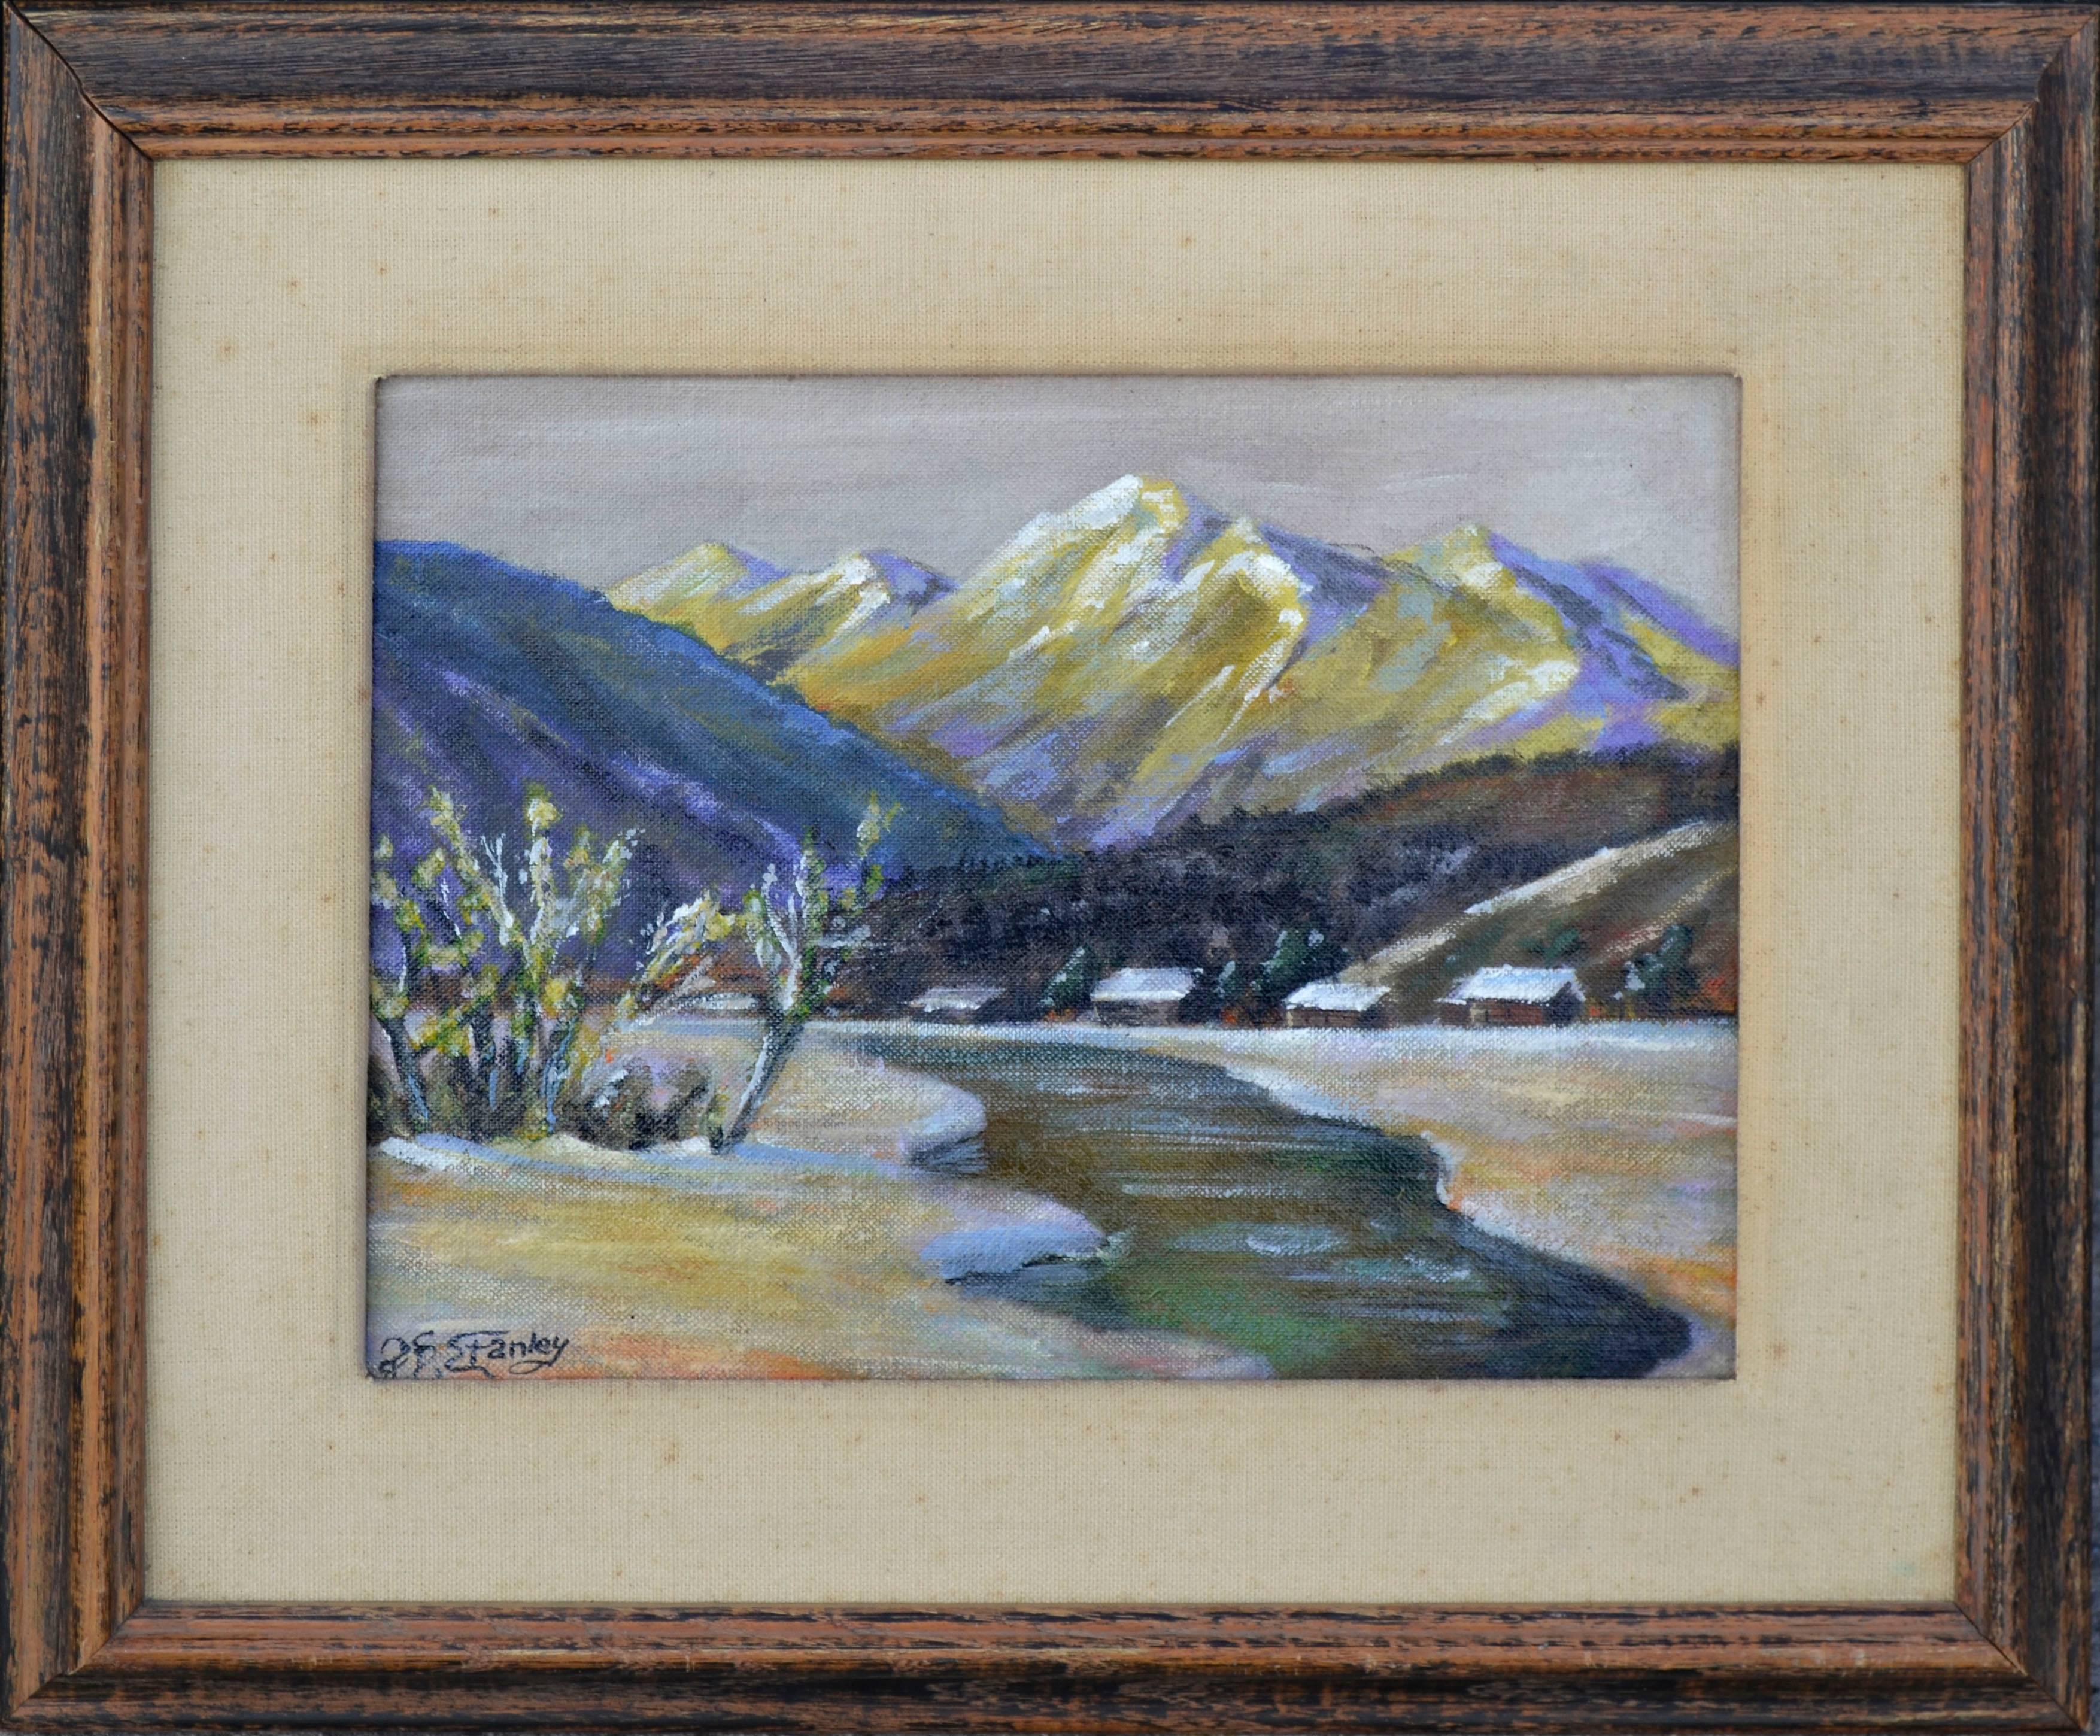 Landscape Painting Franklin D. Stanley - « My Angel's Paradise » (Mon paradis d'ange) - Paysage du milieu du siècle